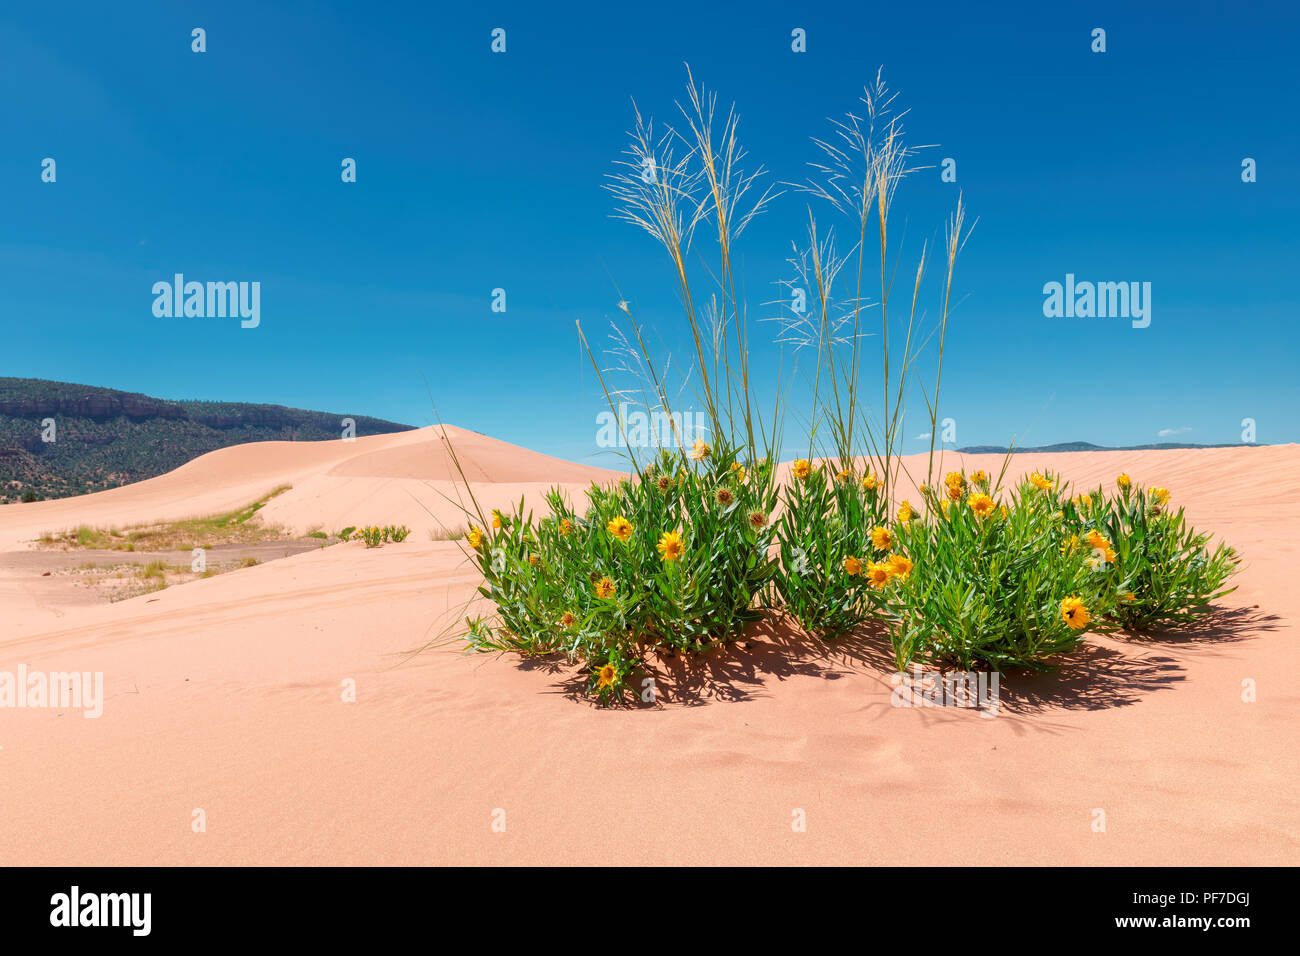 Flowers in the desert Stock Photo